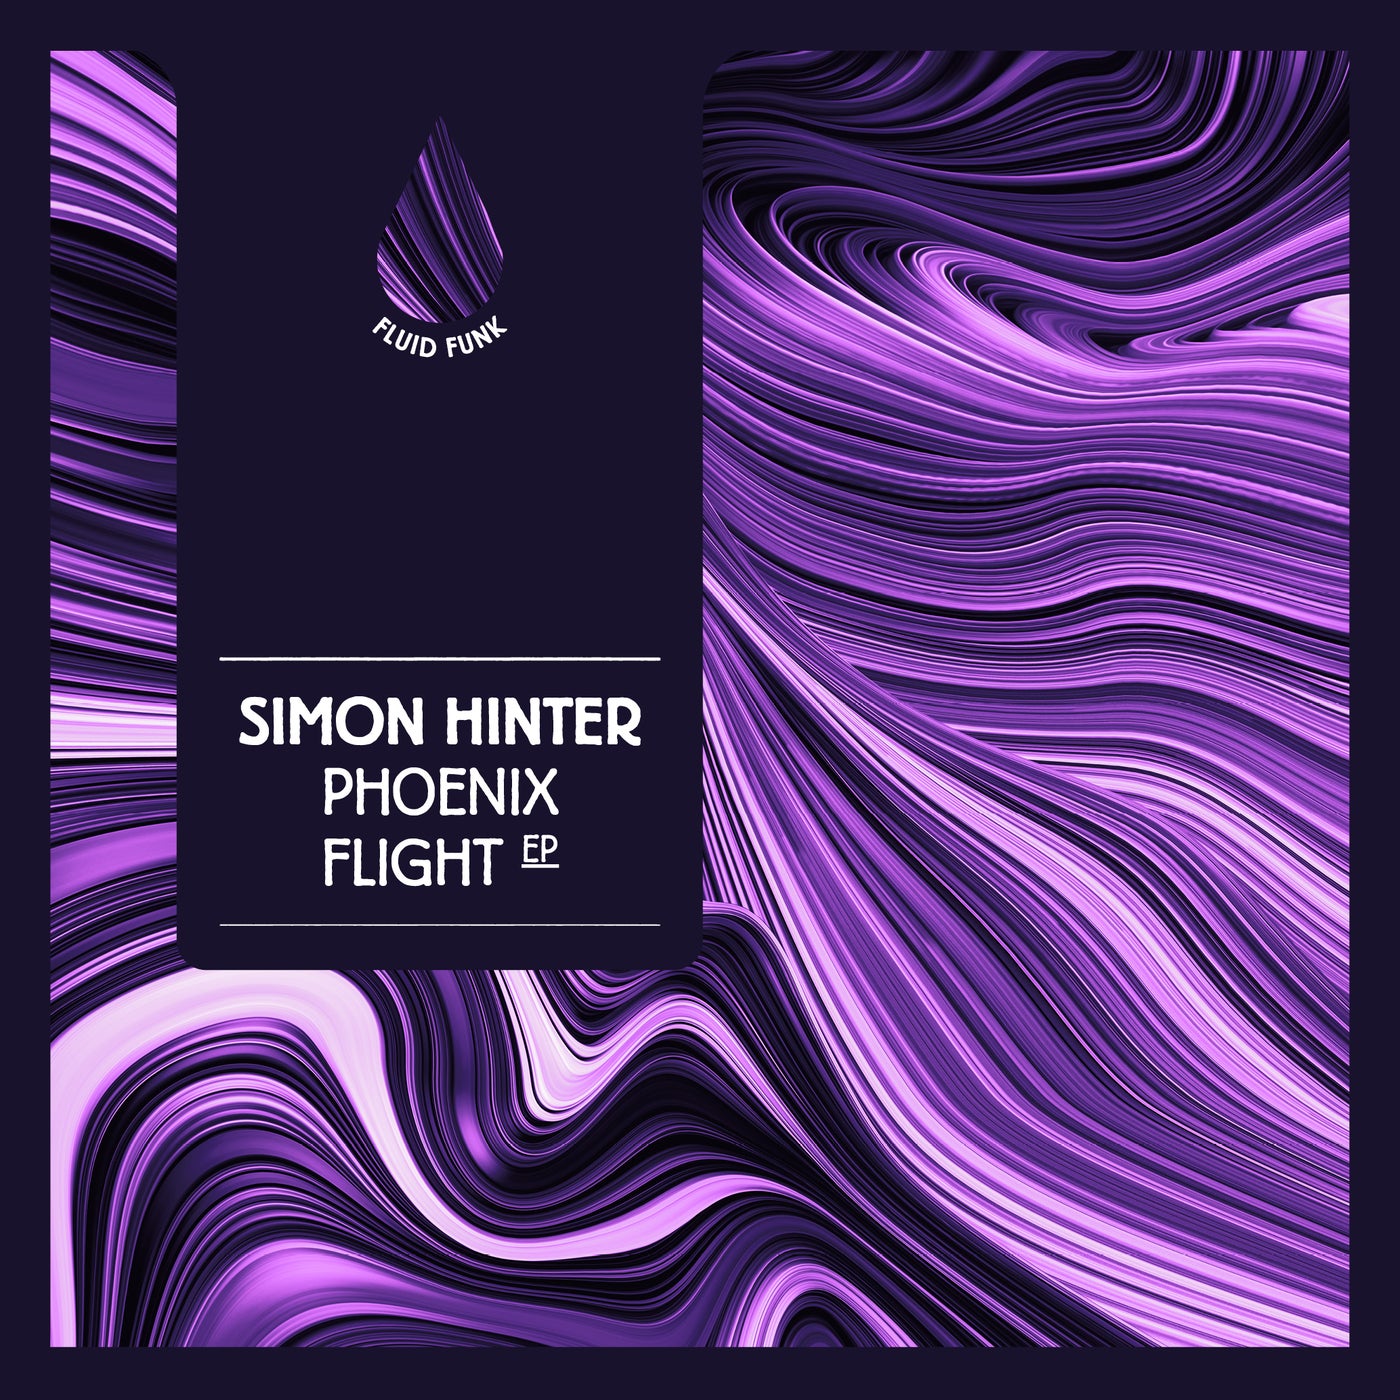 Phoenix Flight EP